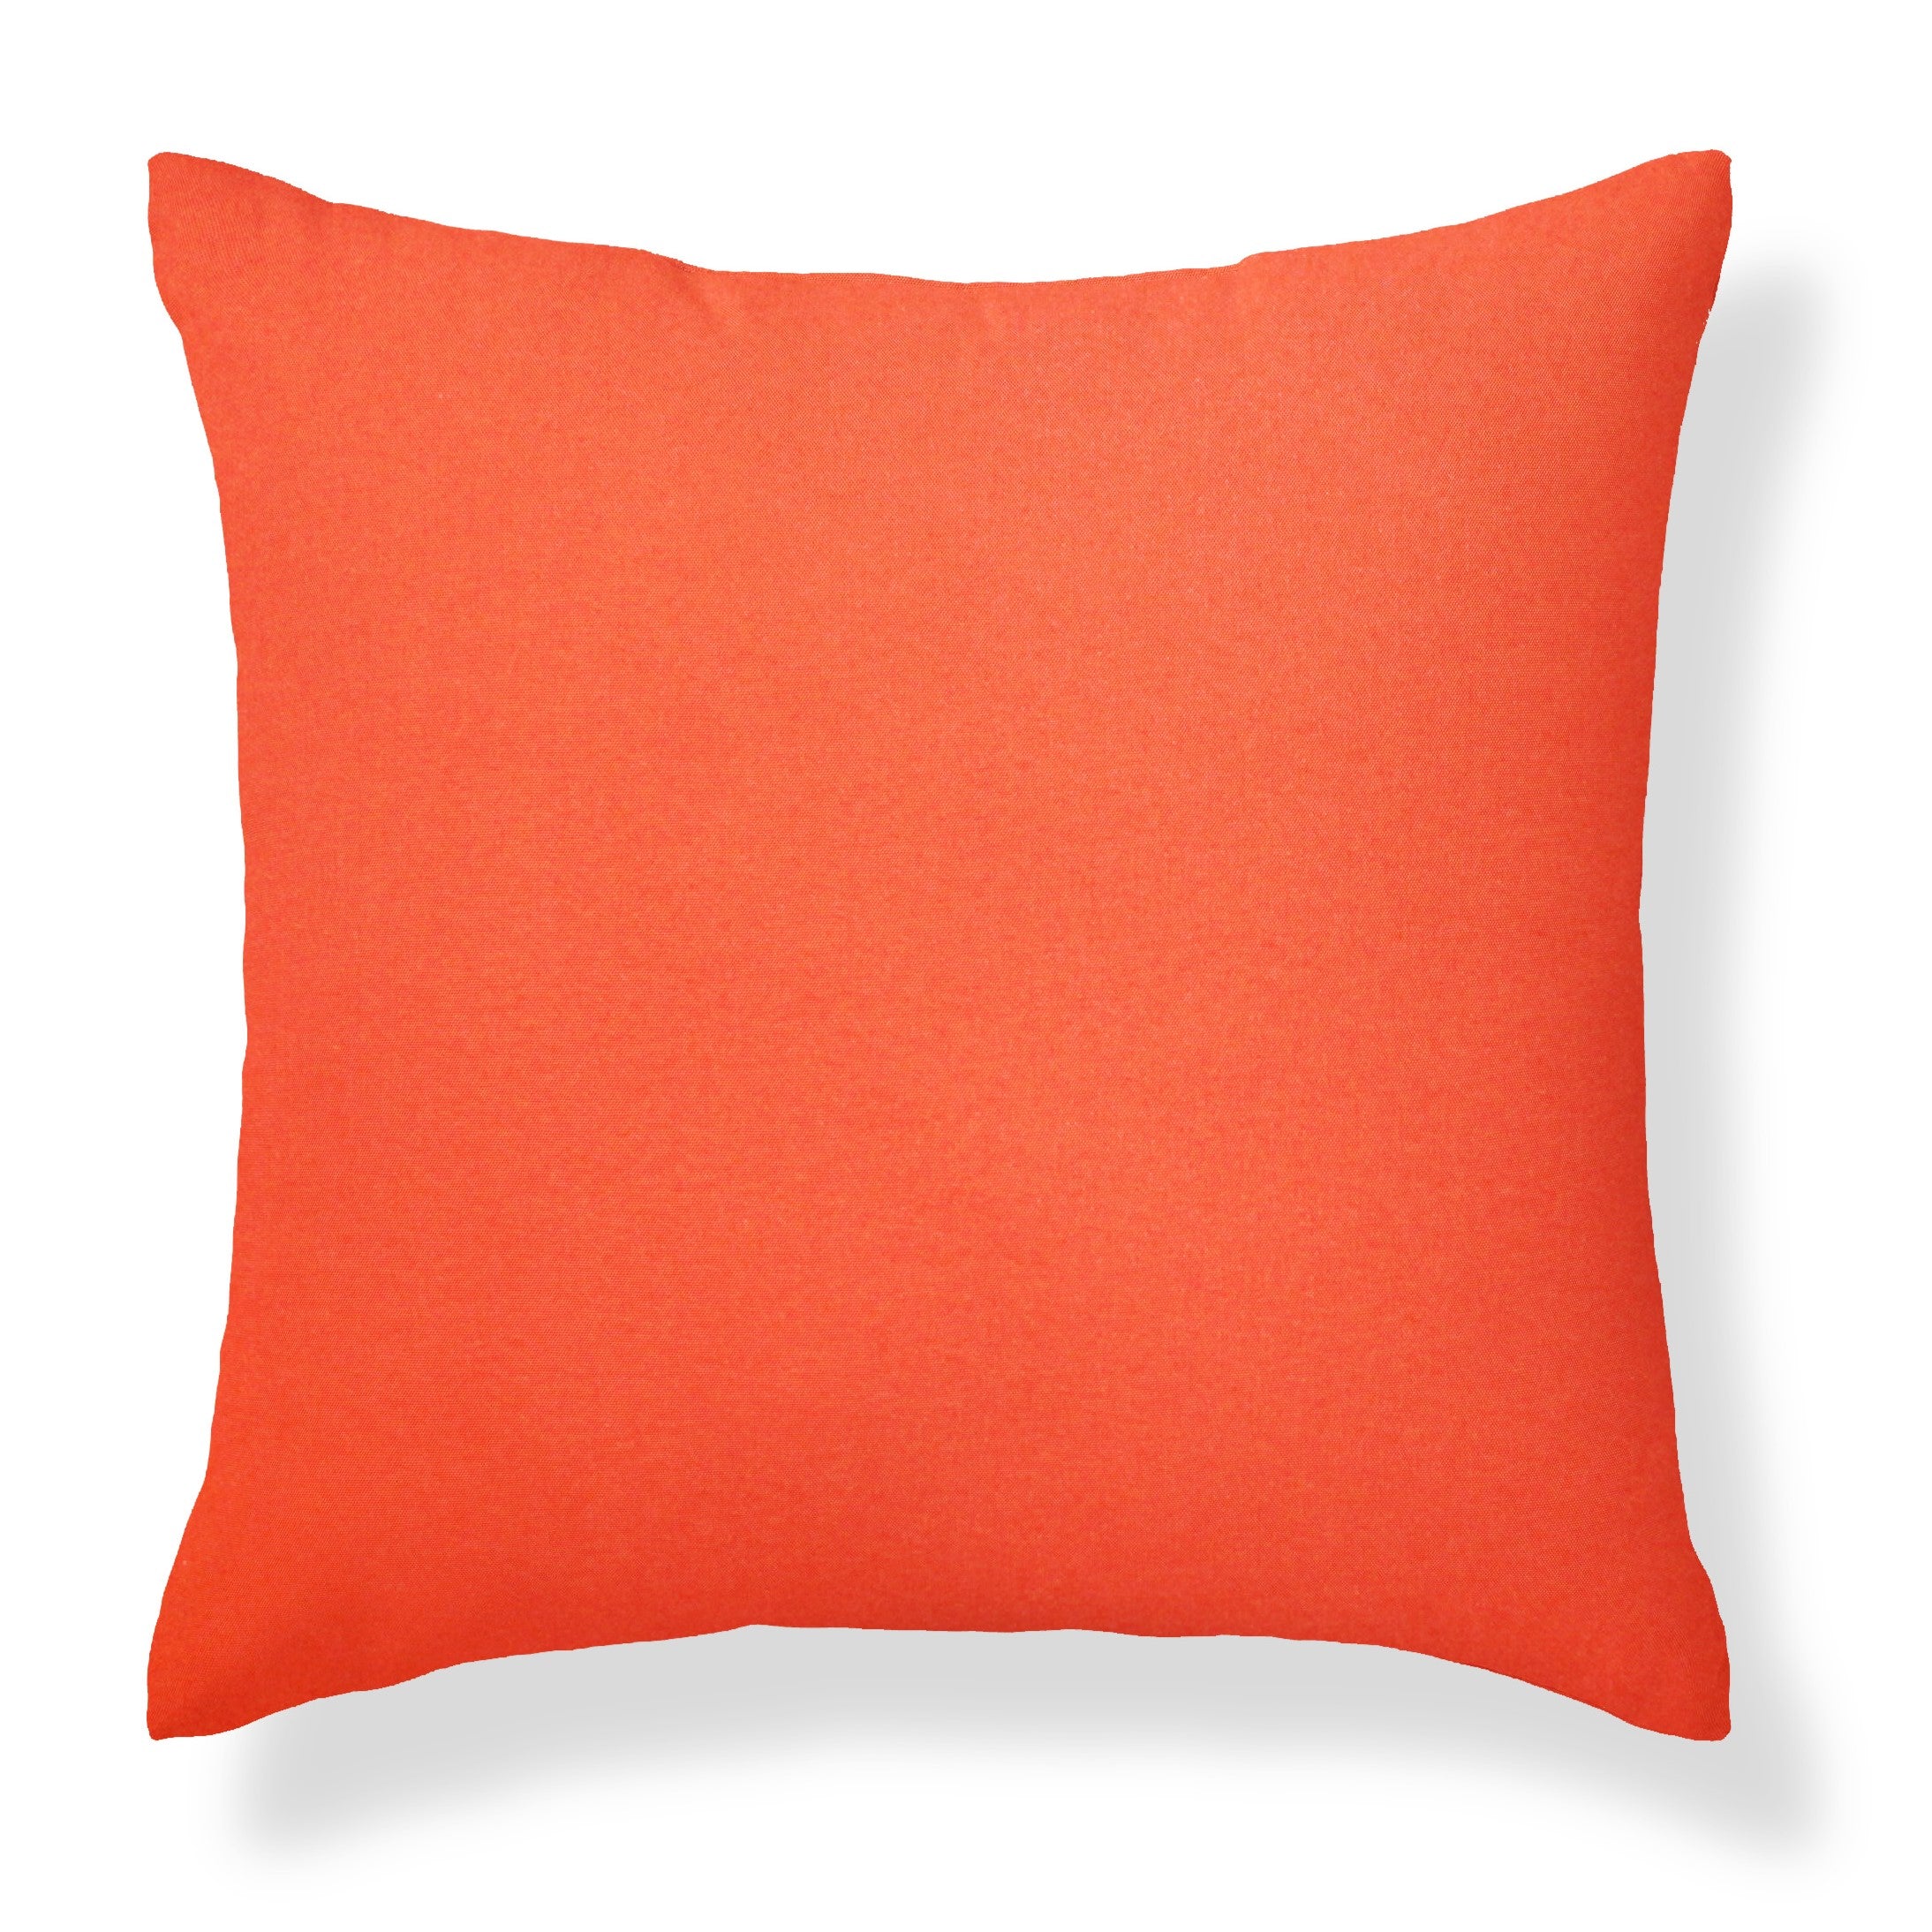 Set of 2 Premium Orange Garden Square Water Resistant Cushions